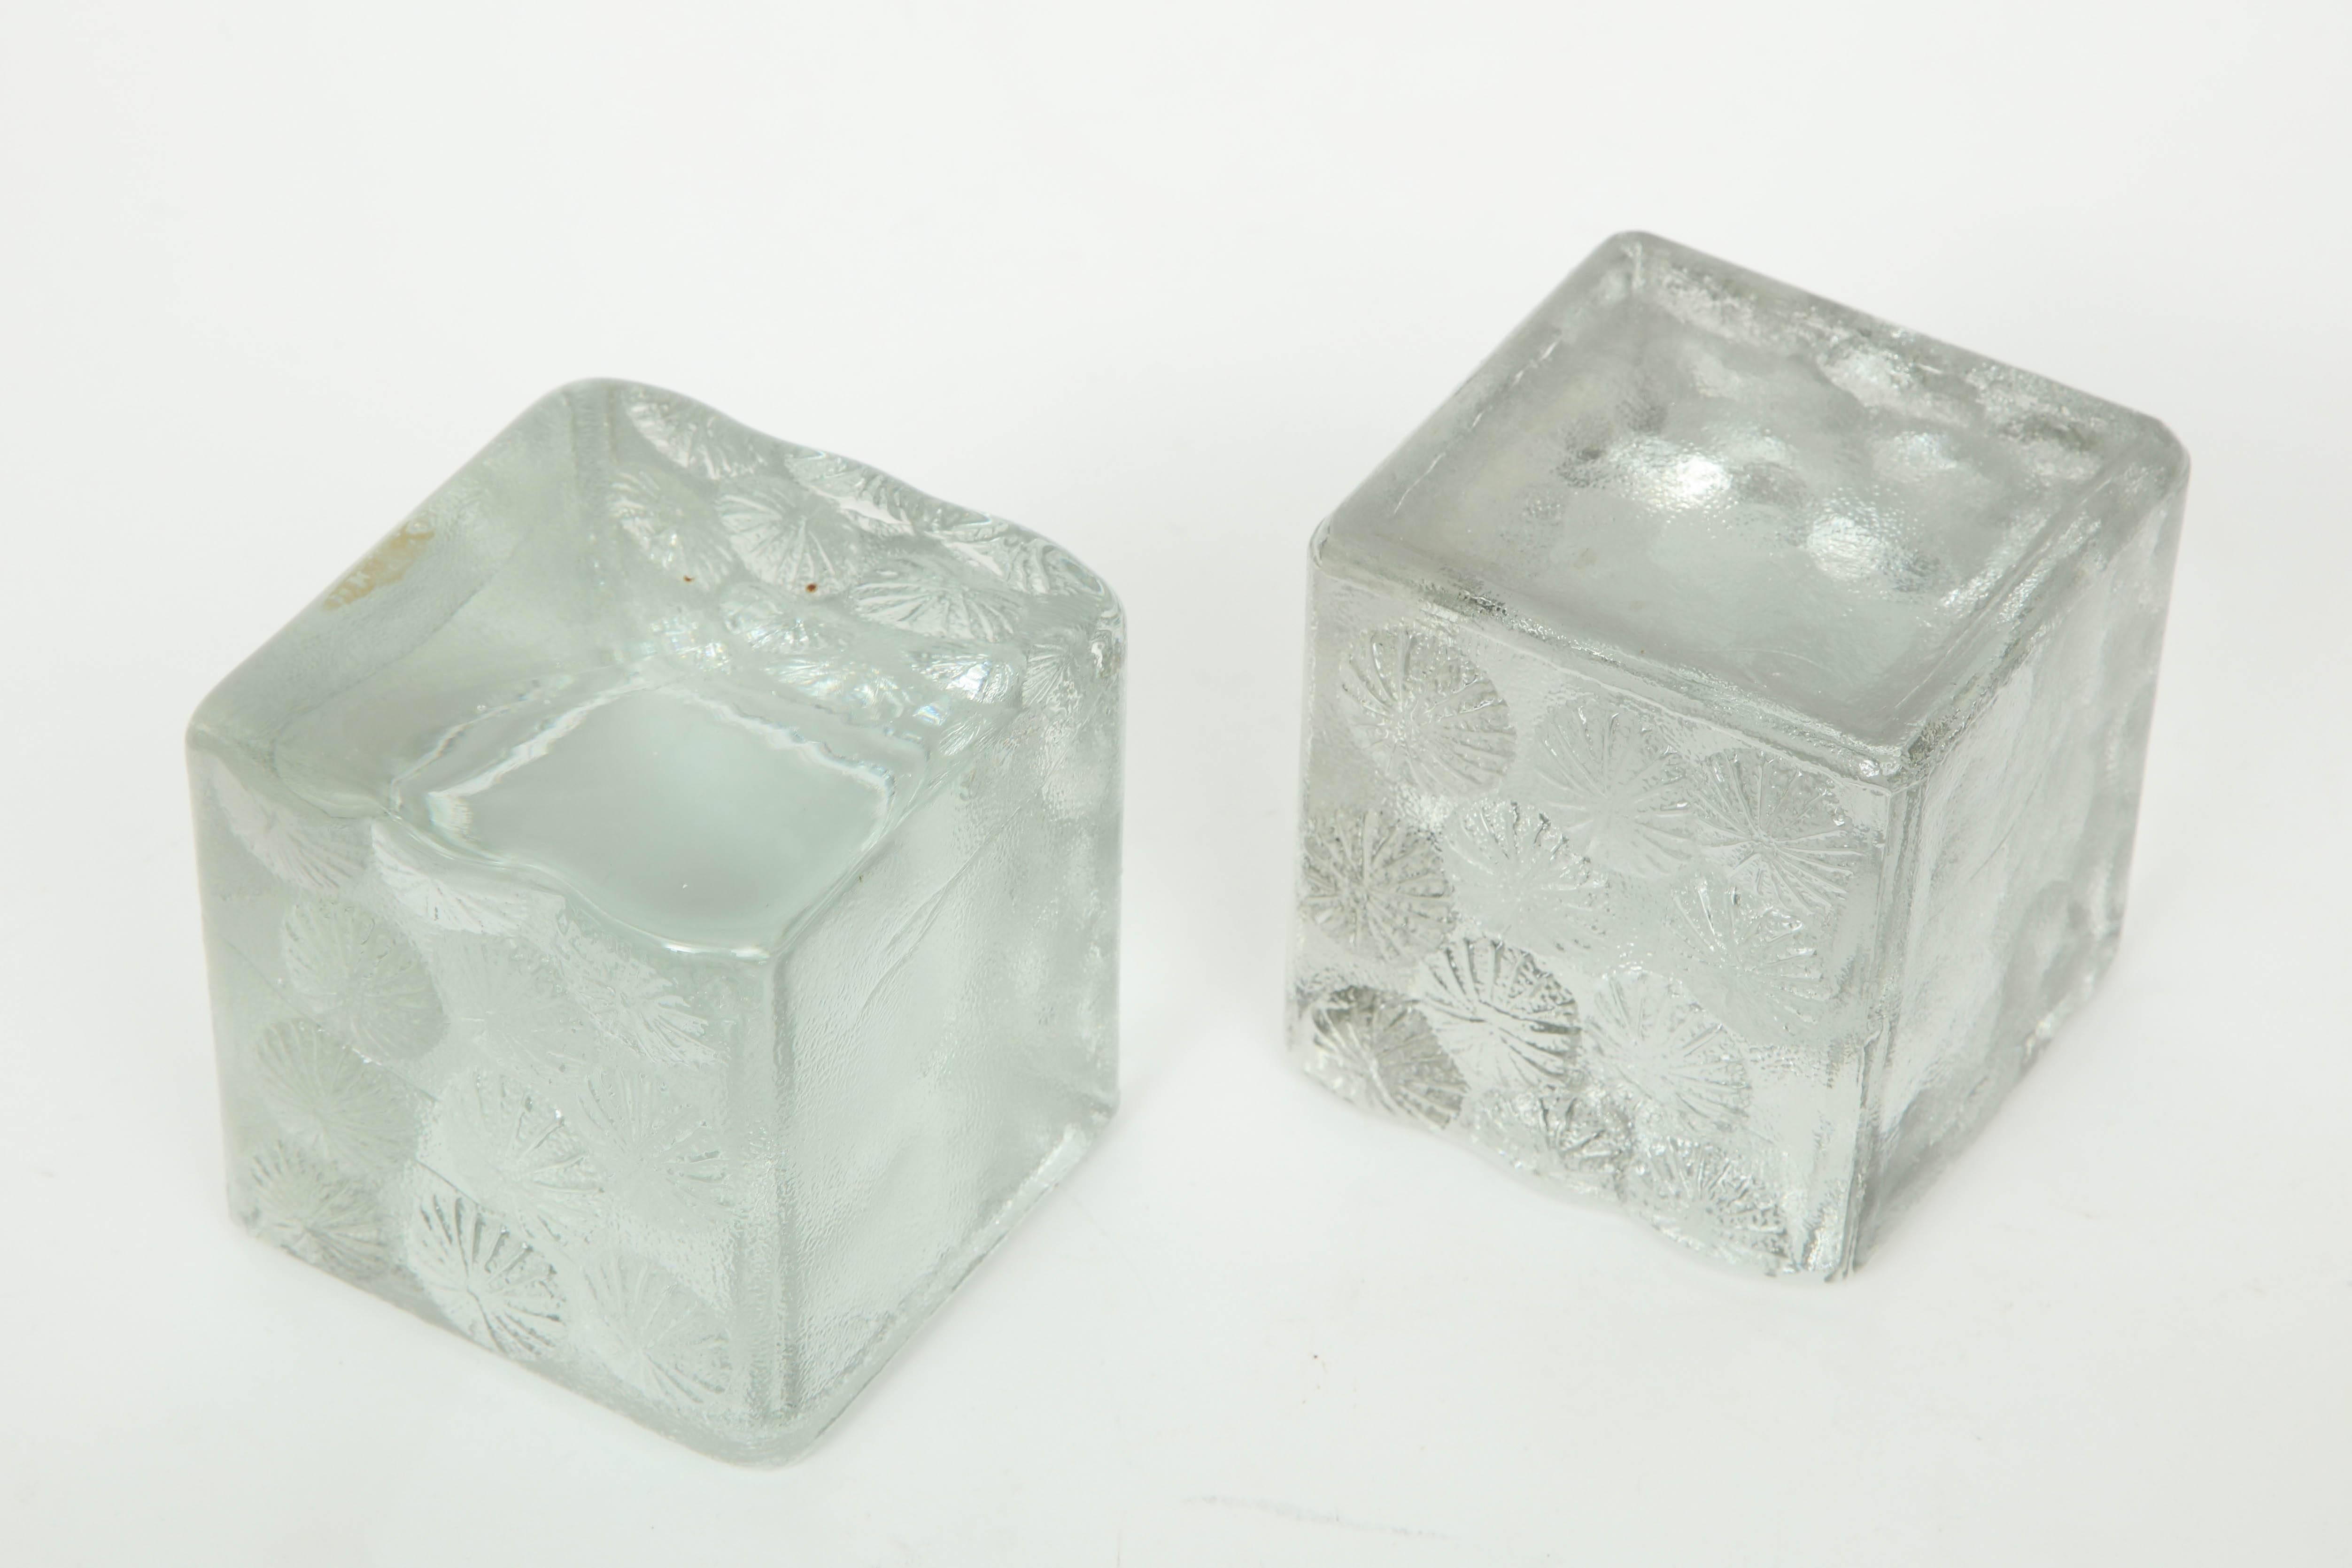 Art Glass Blenko Solid Glass Block Bookends